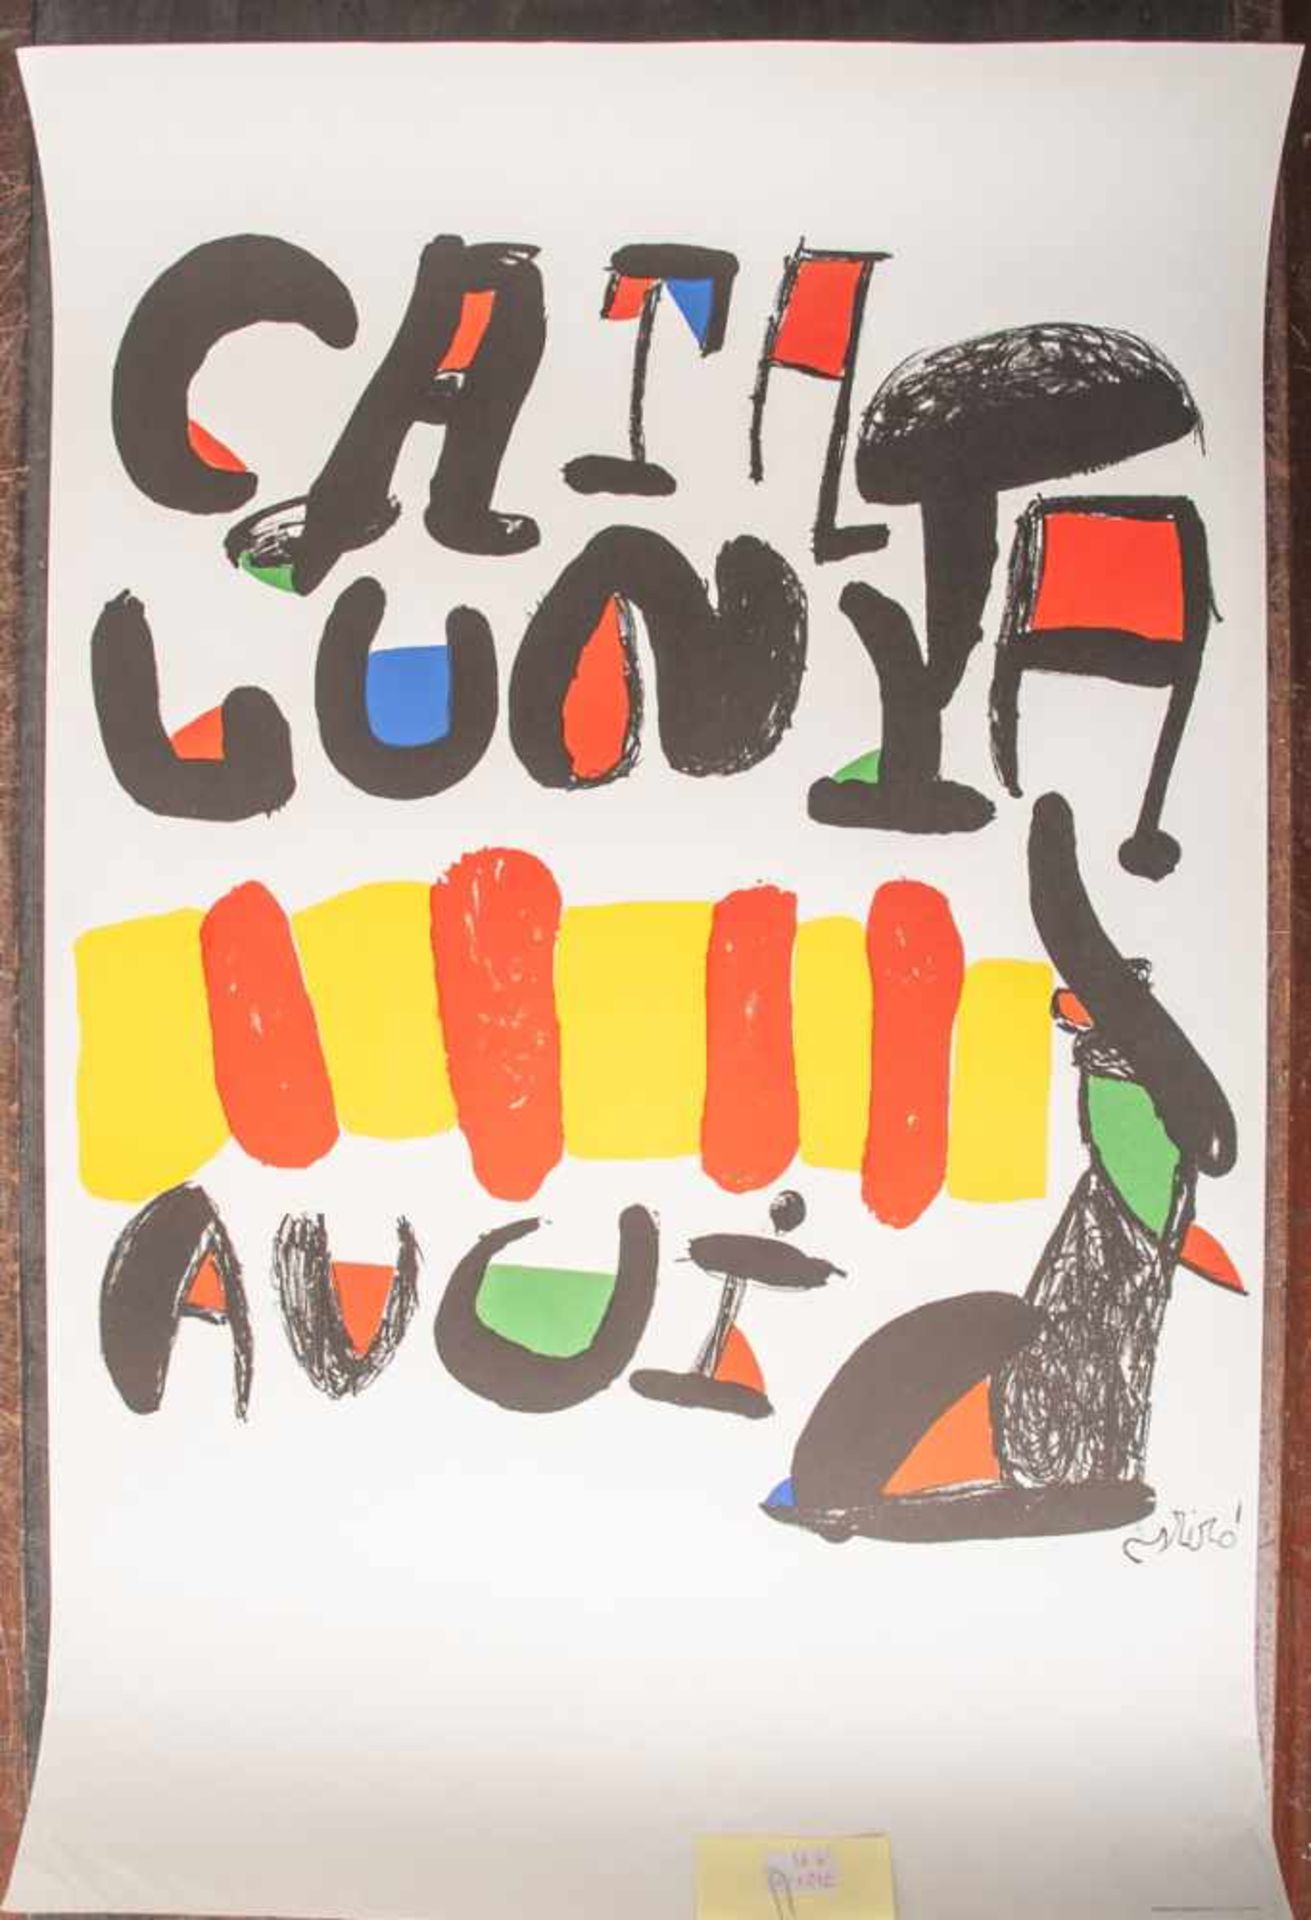 Miró, Joan (1893-1983), "Catalunya Avui" (1981), Farbplakat/Lithographie,Ausstellungsplakat,